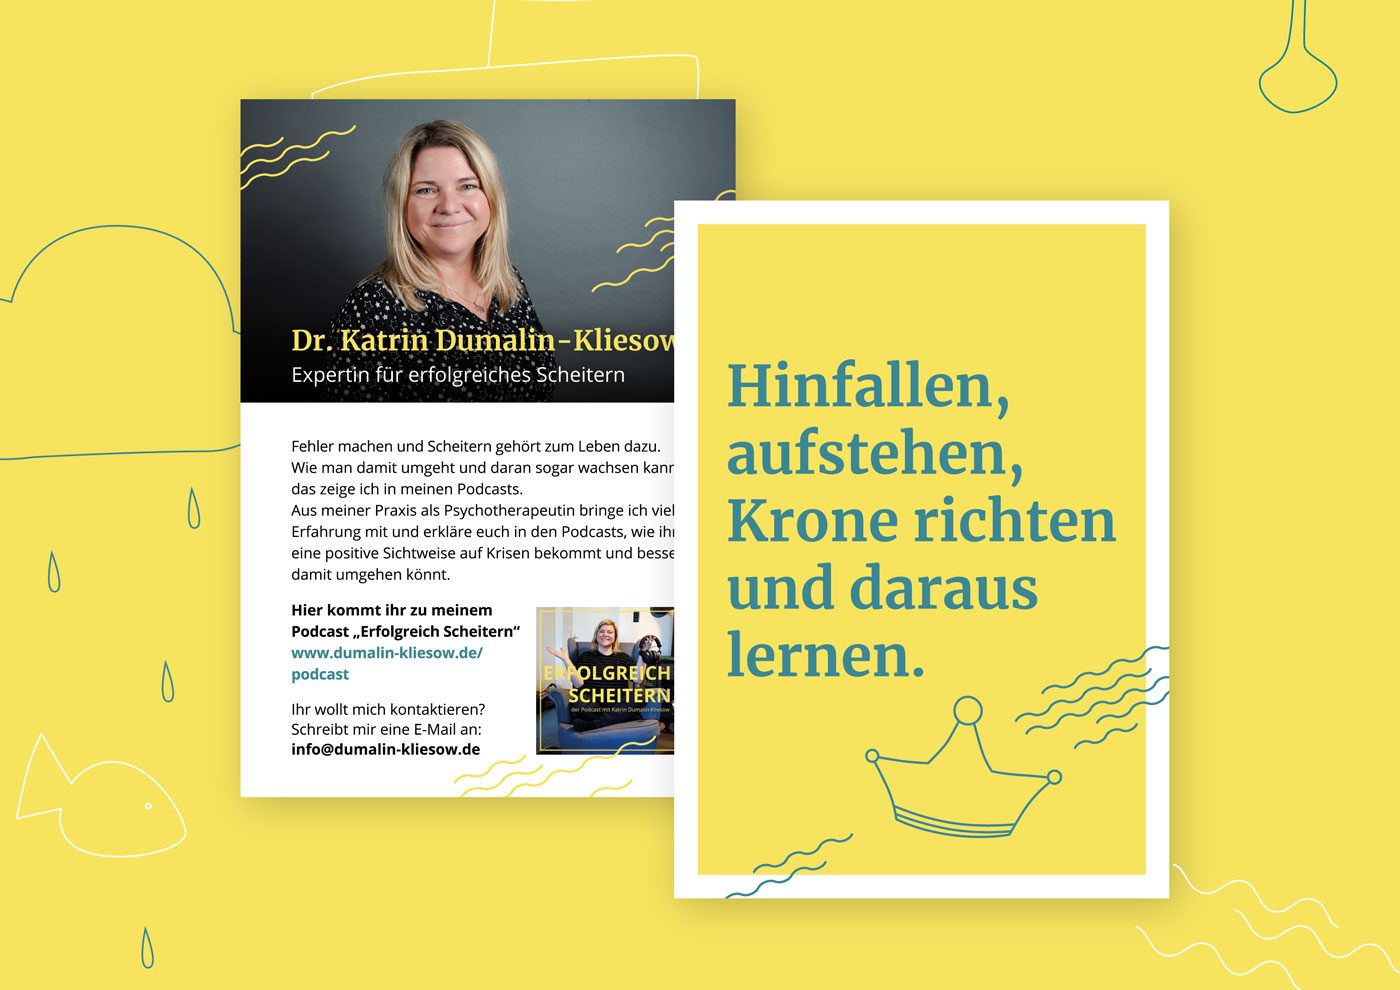 Postkarte Für Katrin Dumalin-Kliesow ist eine Referenz des Grafikbüro Sperling